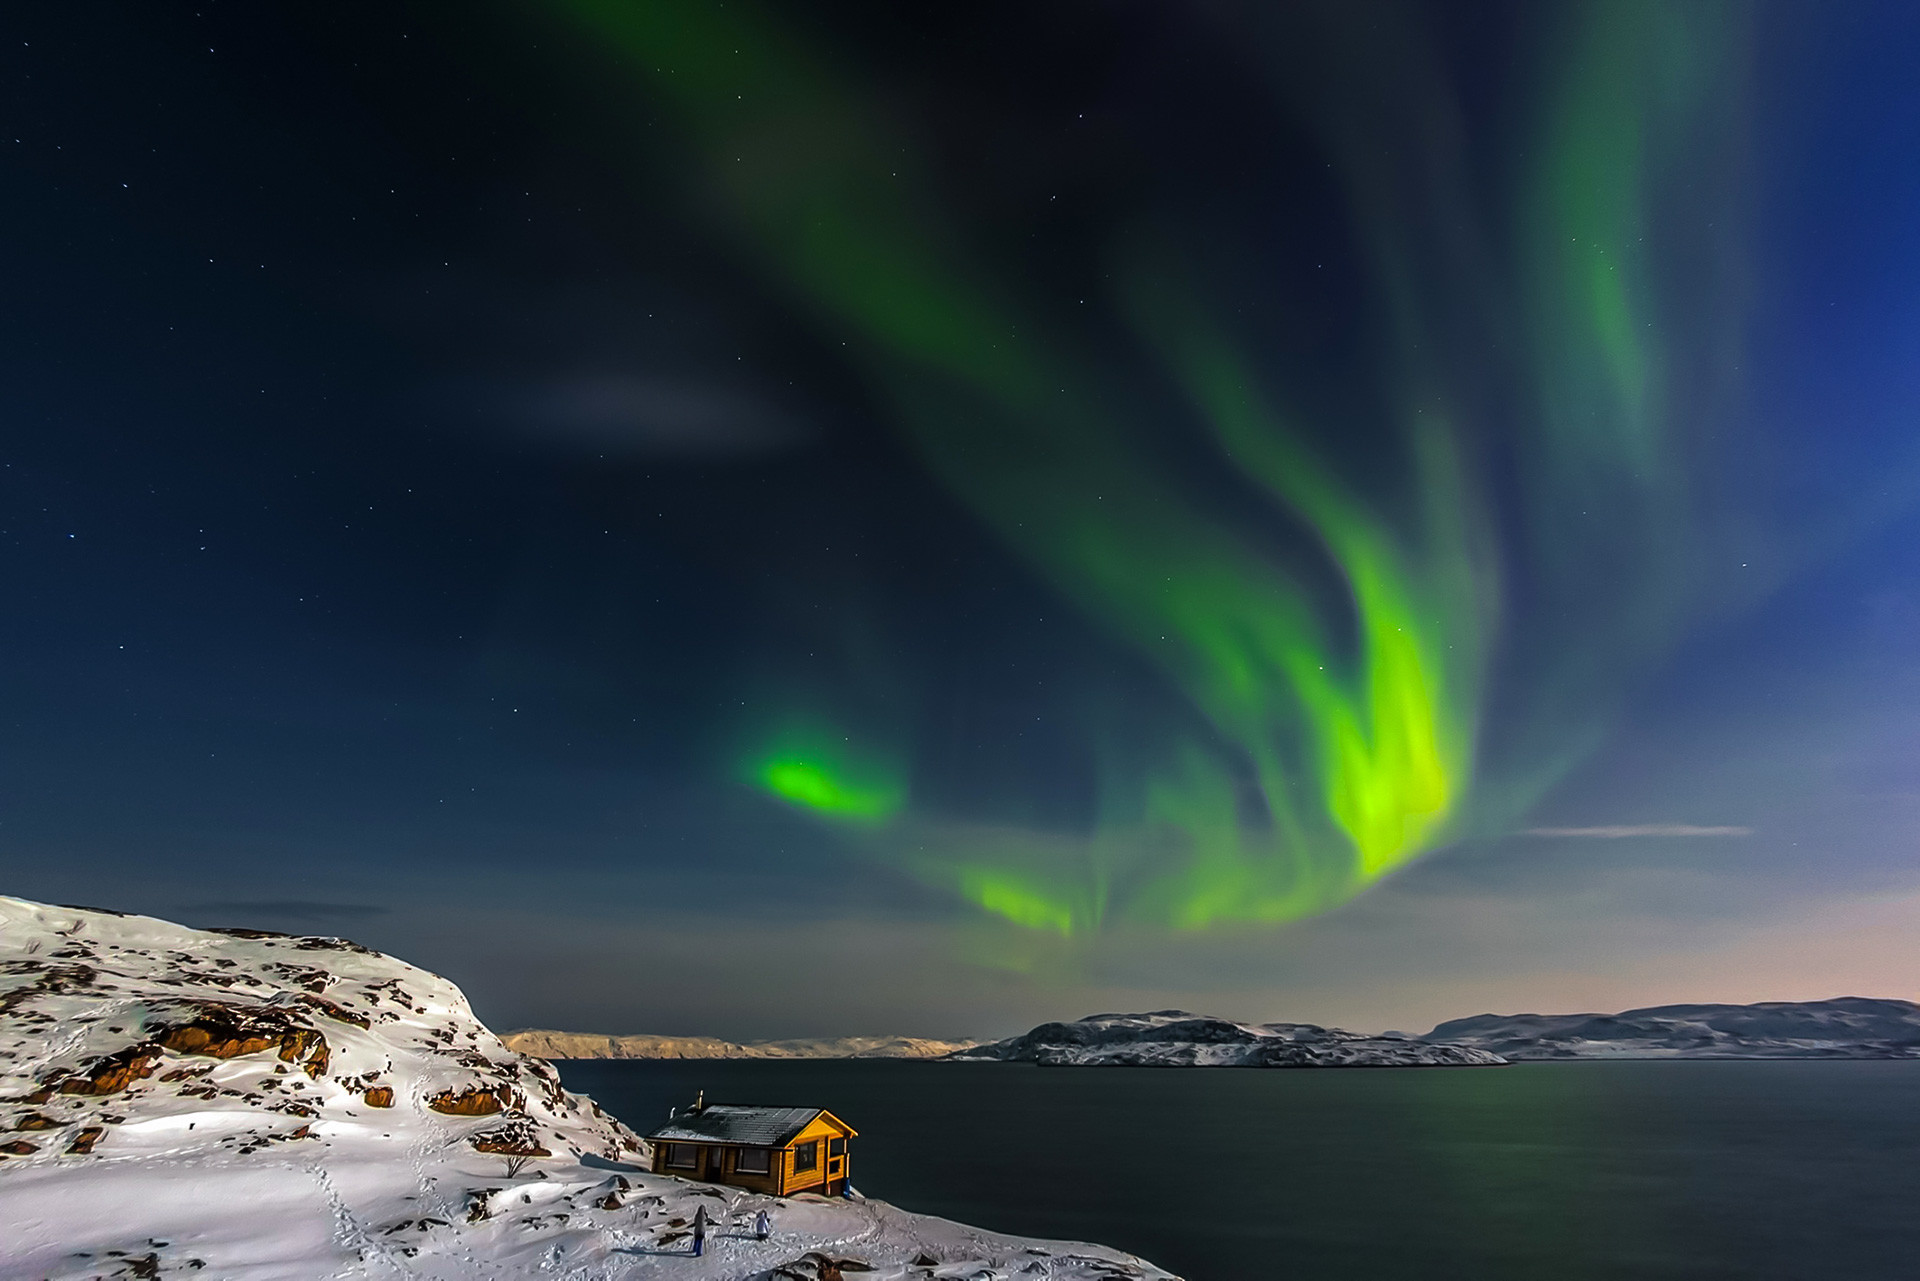 Kuća na obali Barentsovog mora i Aurora. Poluotok Kola, Murmanska oblast.